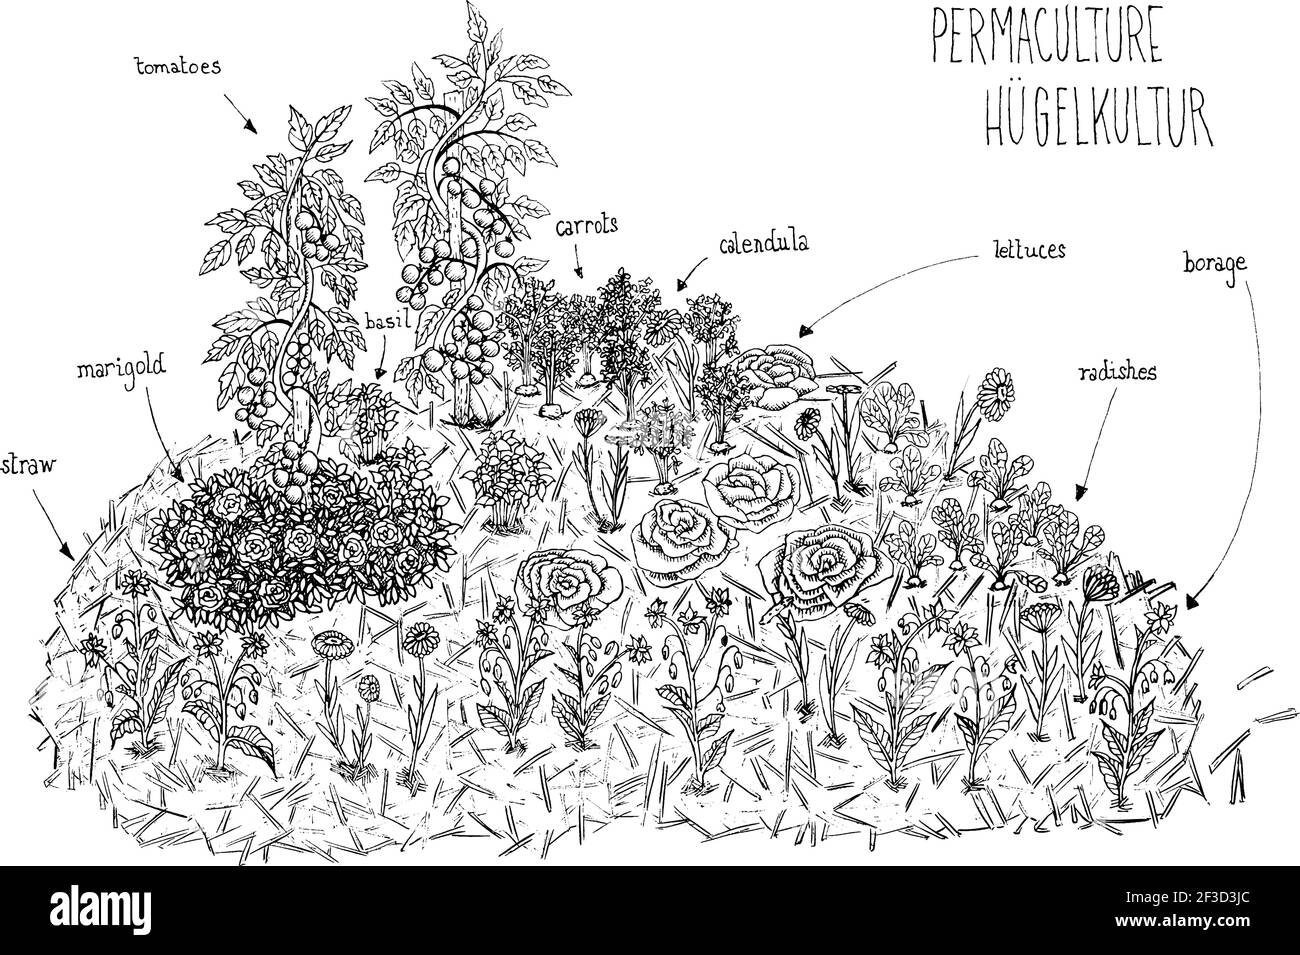 vektor-Illustration eines schwarz-weißen Schema Linien Handzeichnung von Permakultur hugelkultur mit Gemüse und Blumen. Tomaten. Ringelblume. Borretsch Stock Vektor